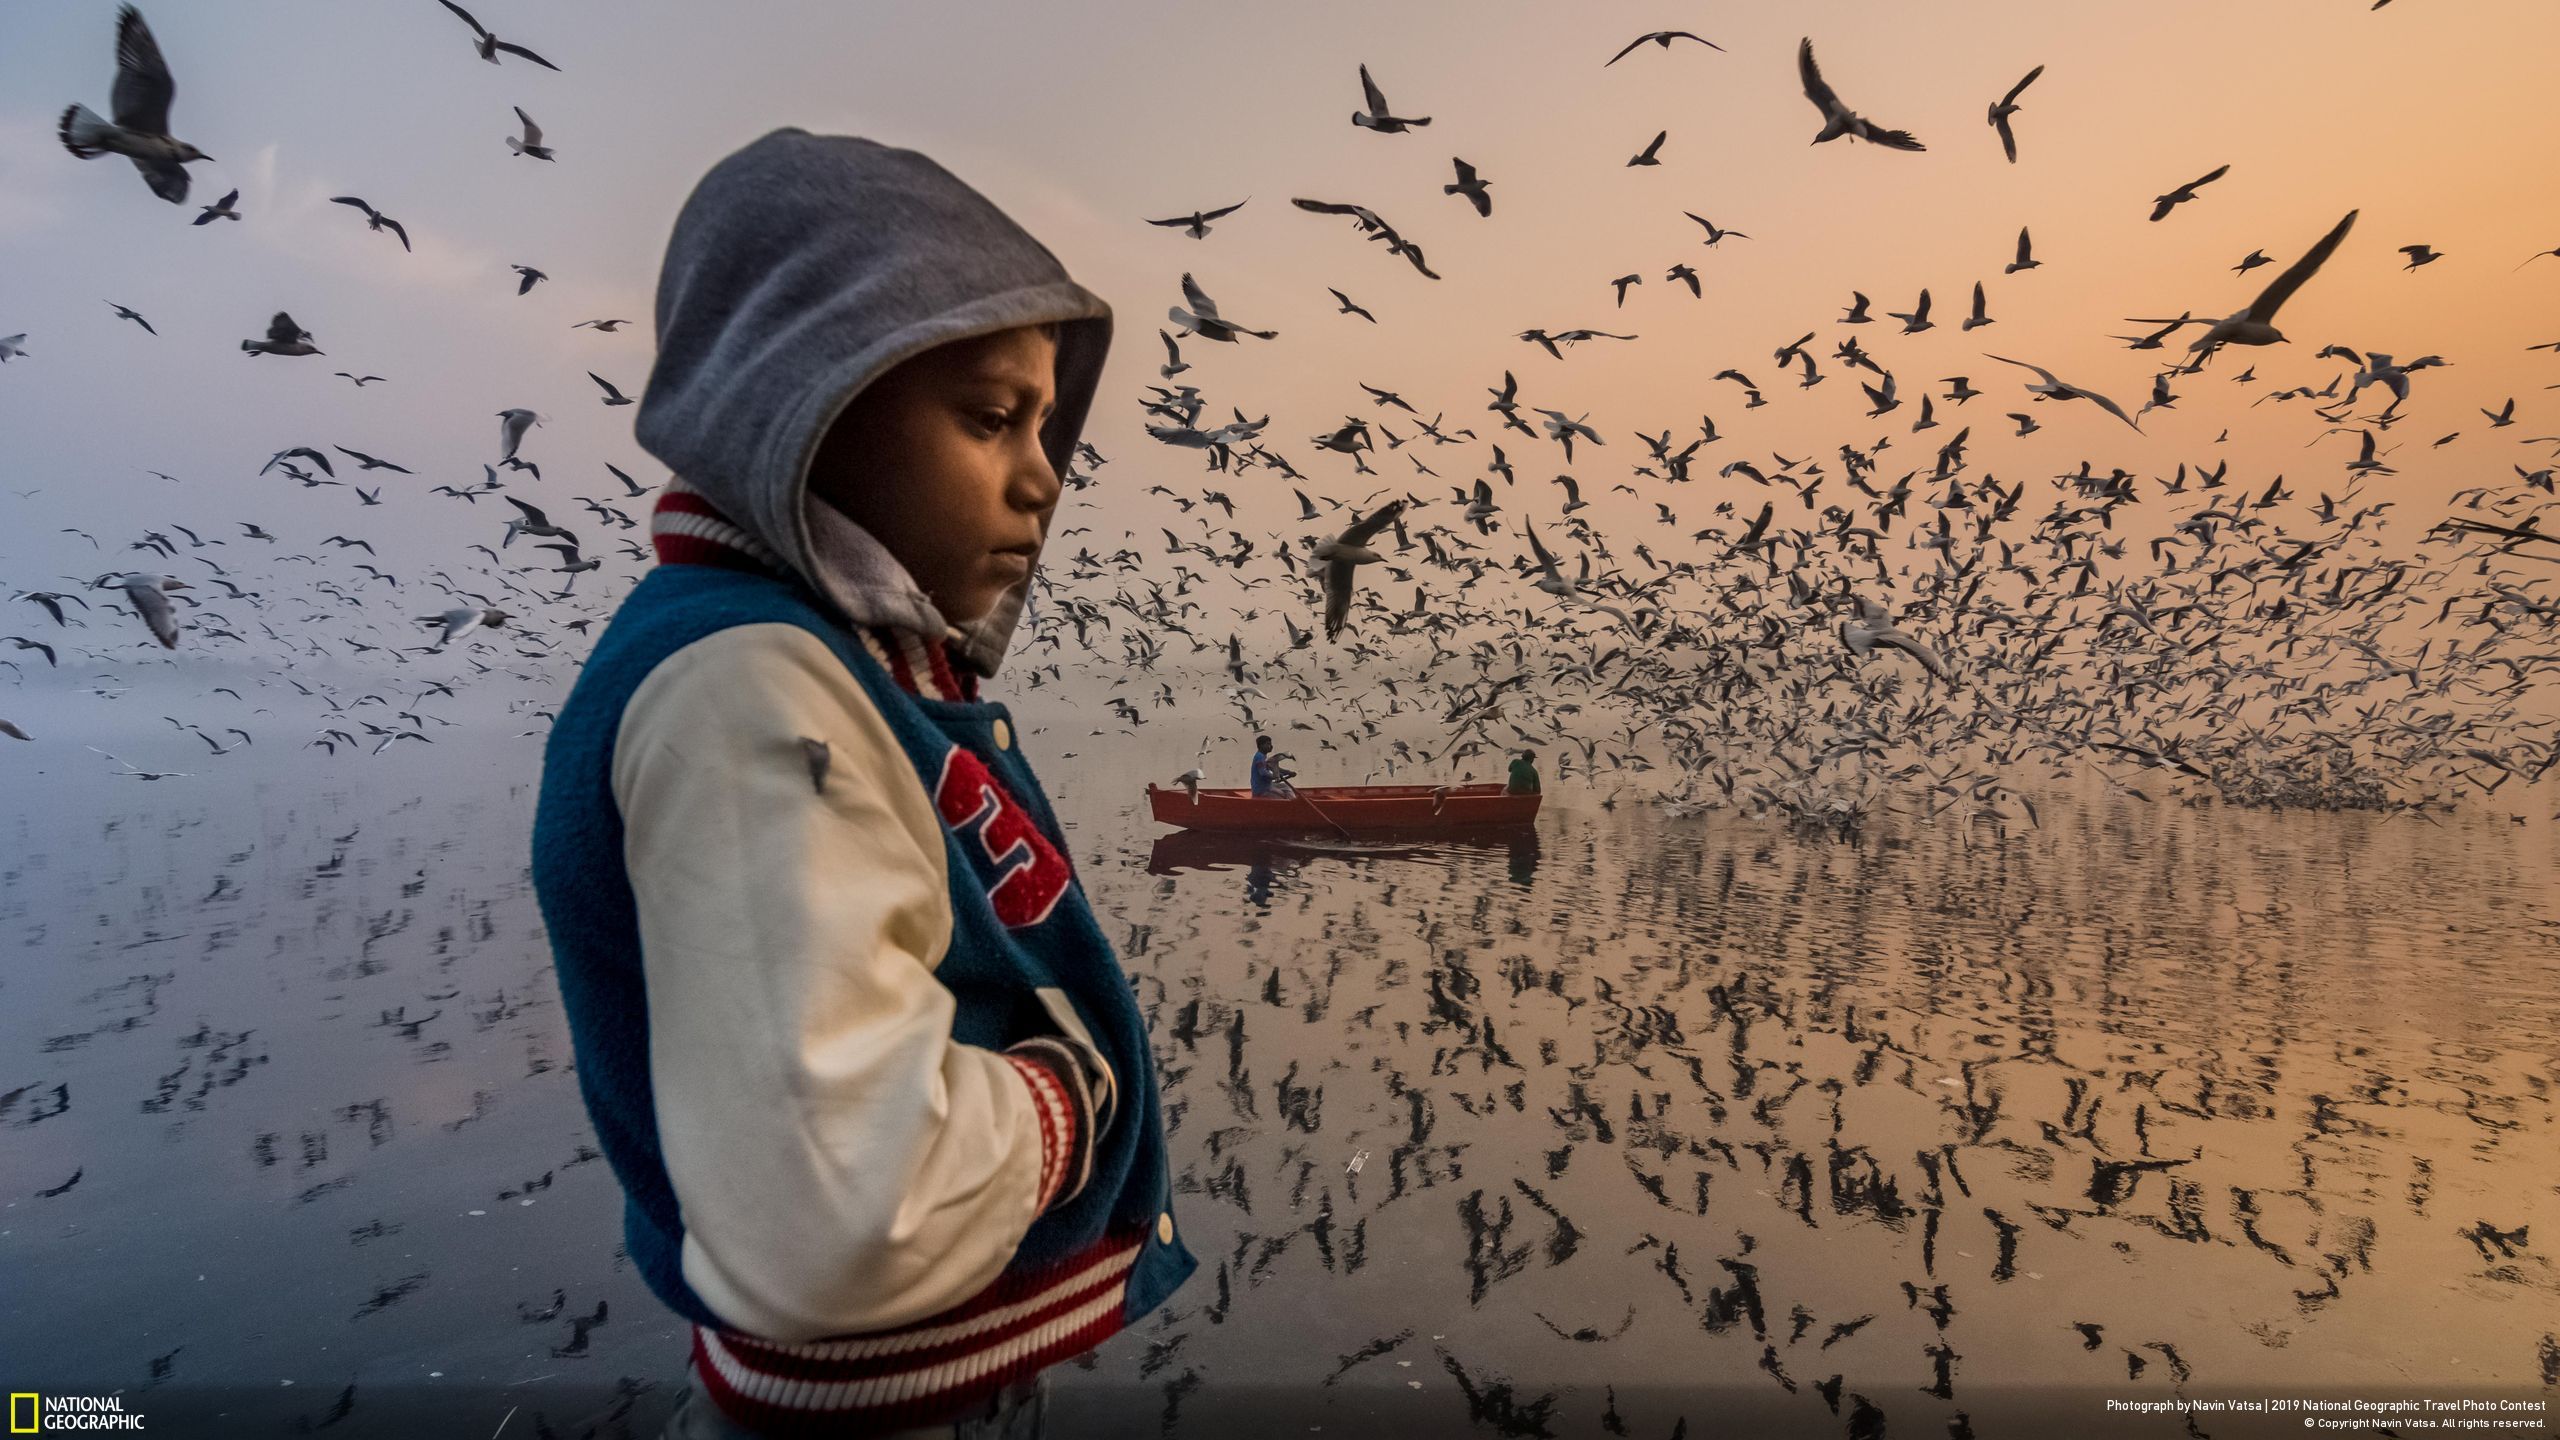 Giải danh dự mục Con người thuộc về tác phẩm “Mood” (tạm dịch: “Tâm trạng”) của Navin Vatsa. Bức ảnh chụp một cậu bé đang trầm tư suy nghĩ. Xung quanh là hàng nghìn con chim mòng biển đang bay dáo dác trên bờ sông Yamuna ở Delhi, Ấn Độ.